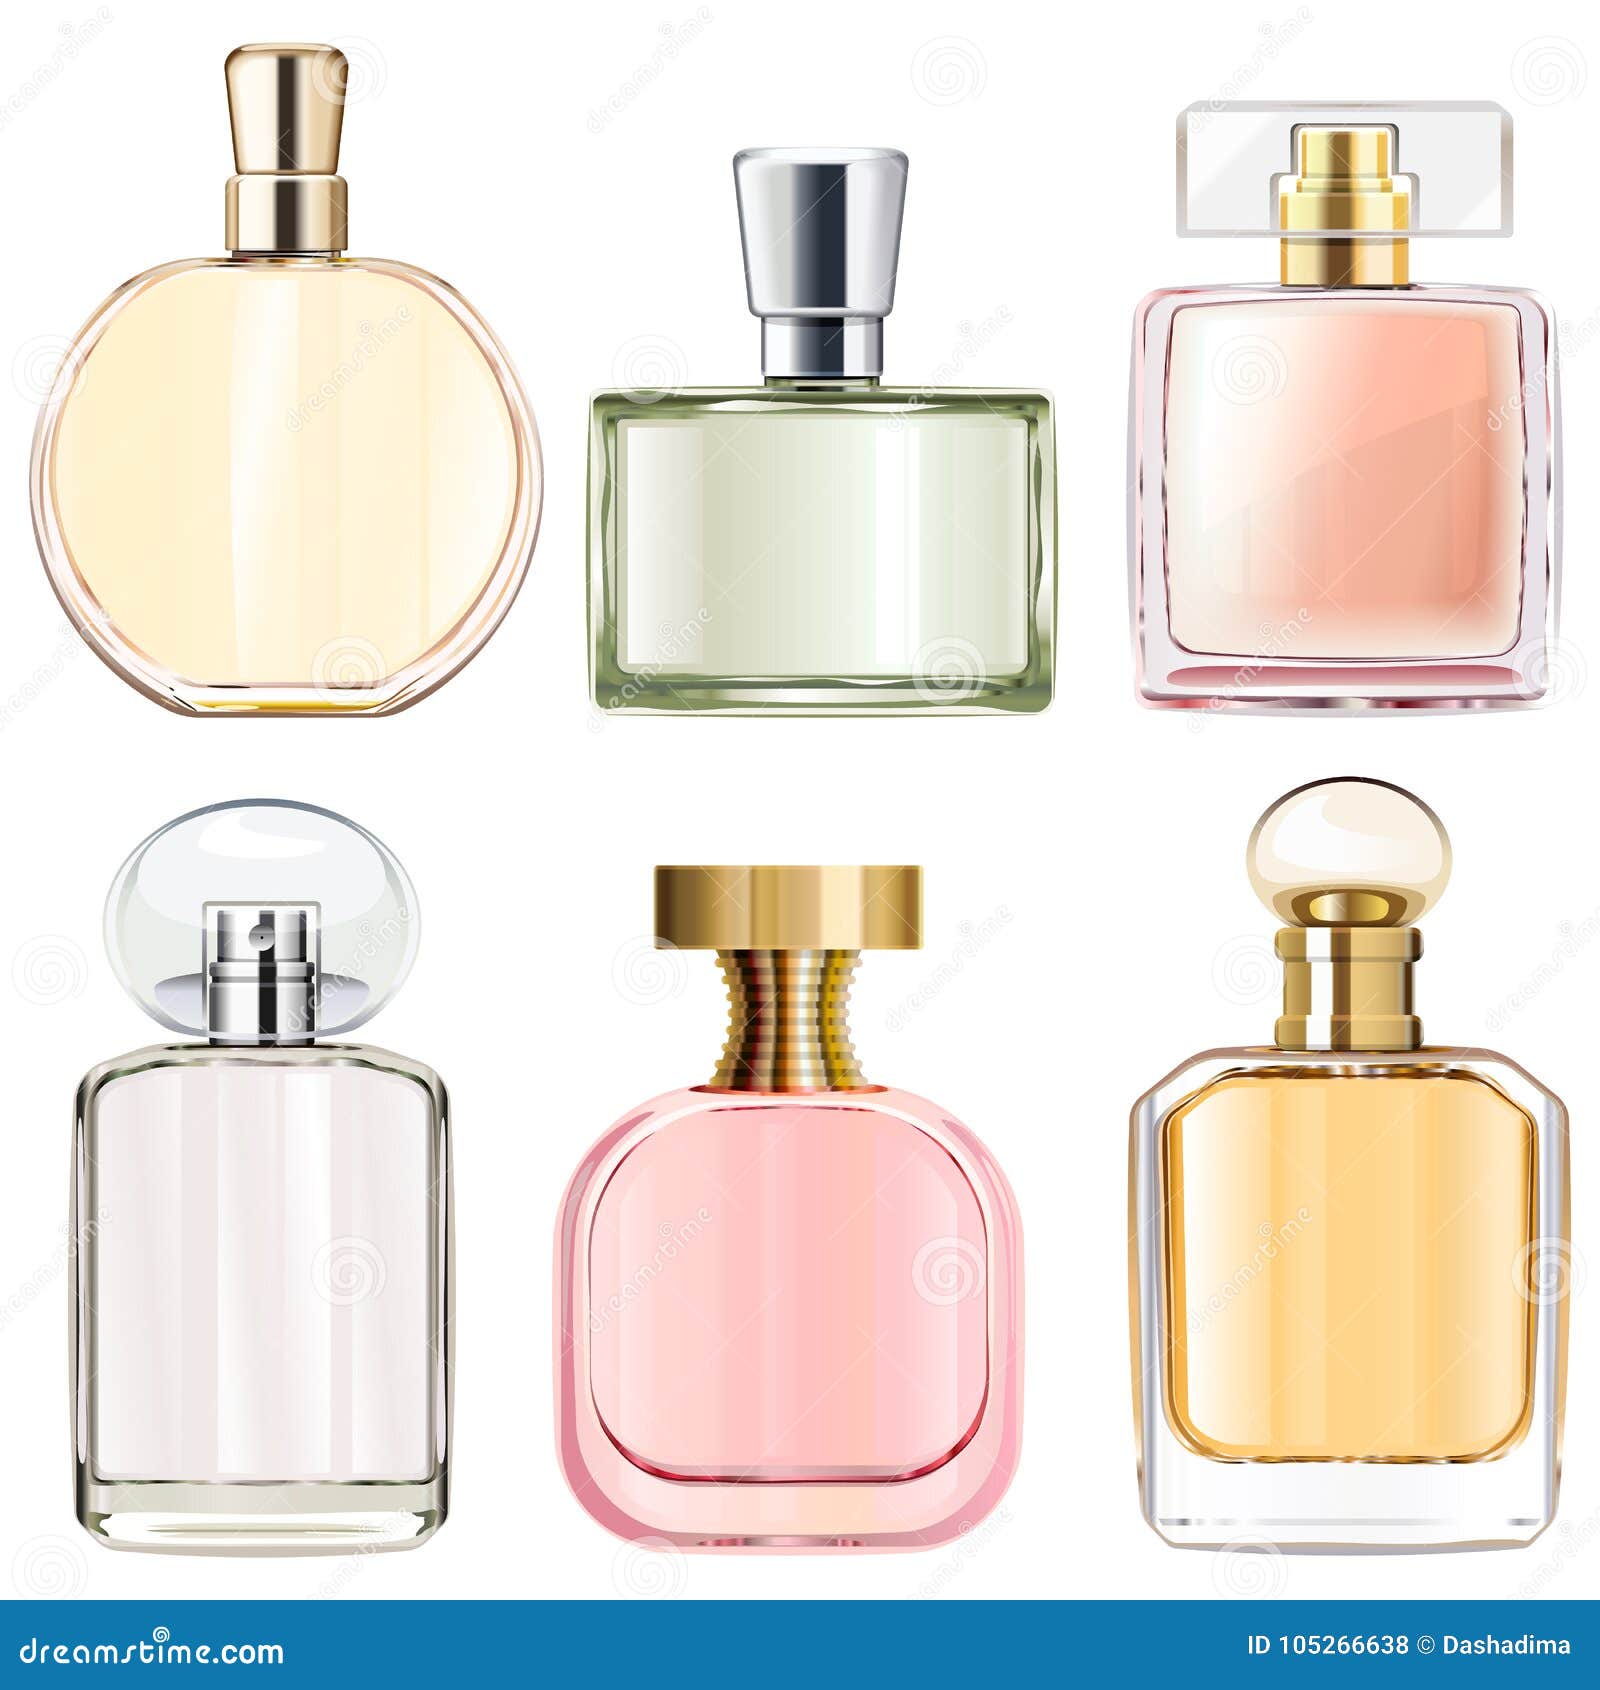  female perfume bottles